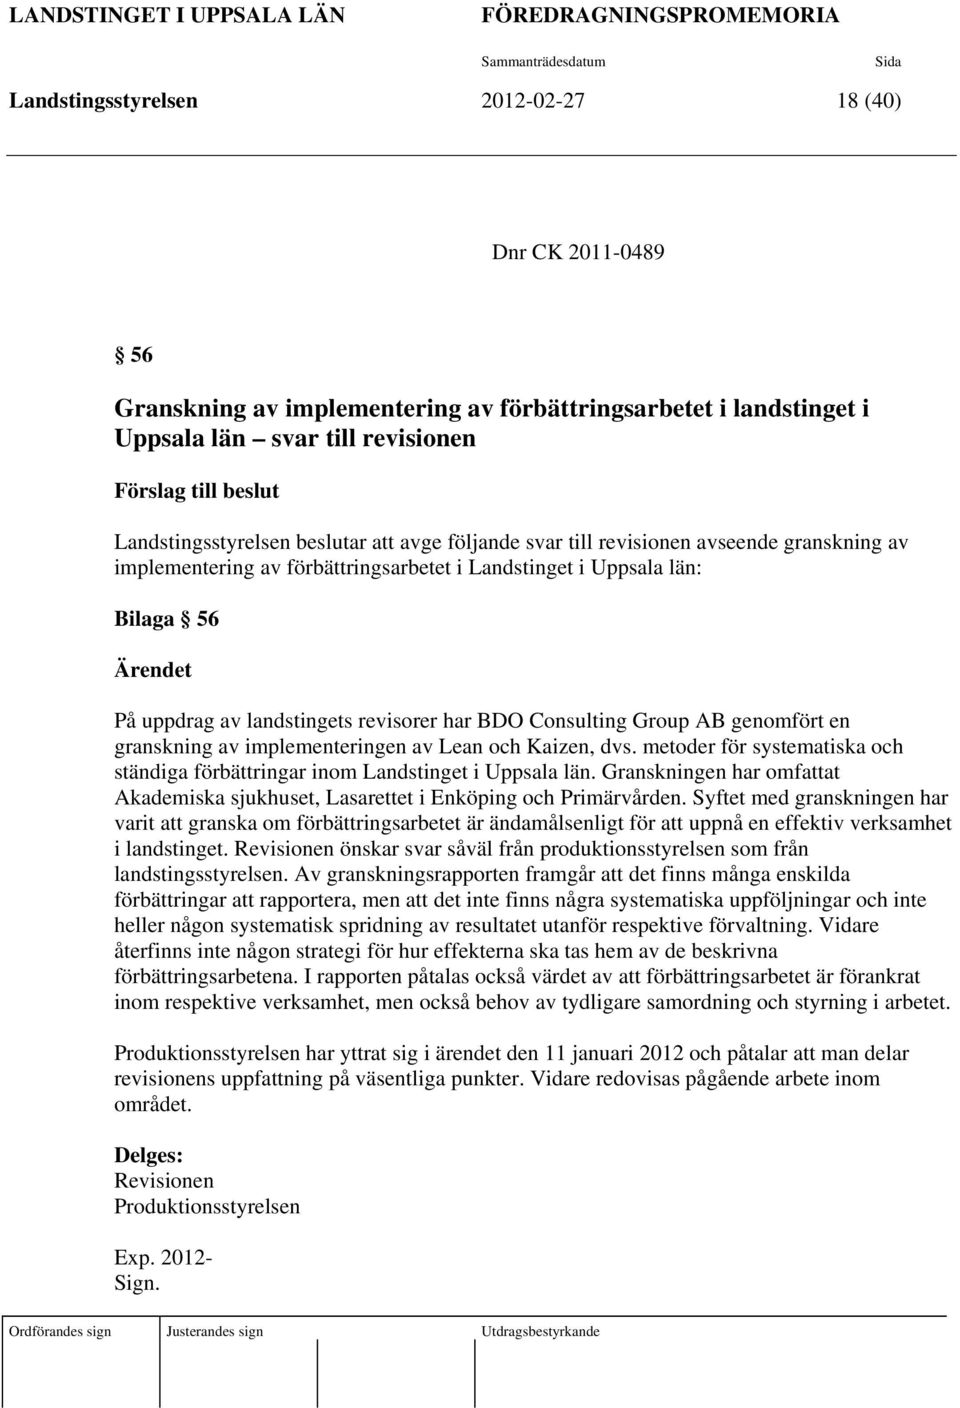 Uppsala län: Bilaga 56 Ärendet På uppdrag av landstingets revisorer har BDO Consulting Group AB genomfört en granskning av implementeringen av Lean och Kaizen, dvs.